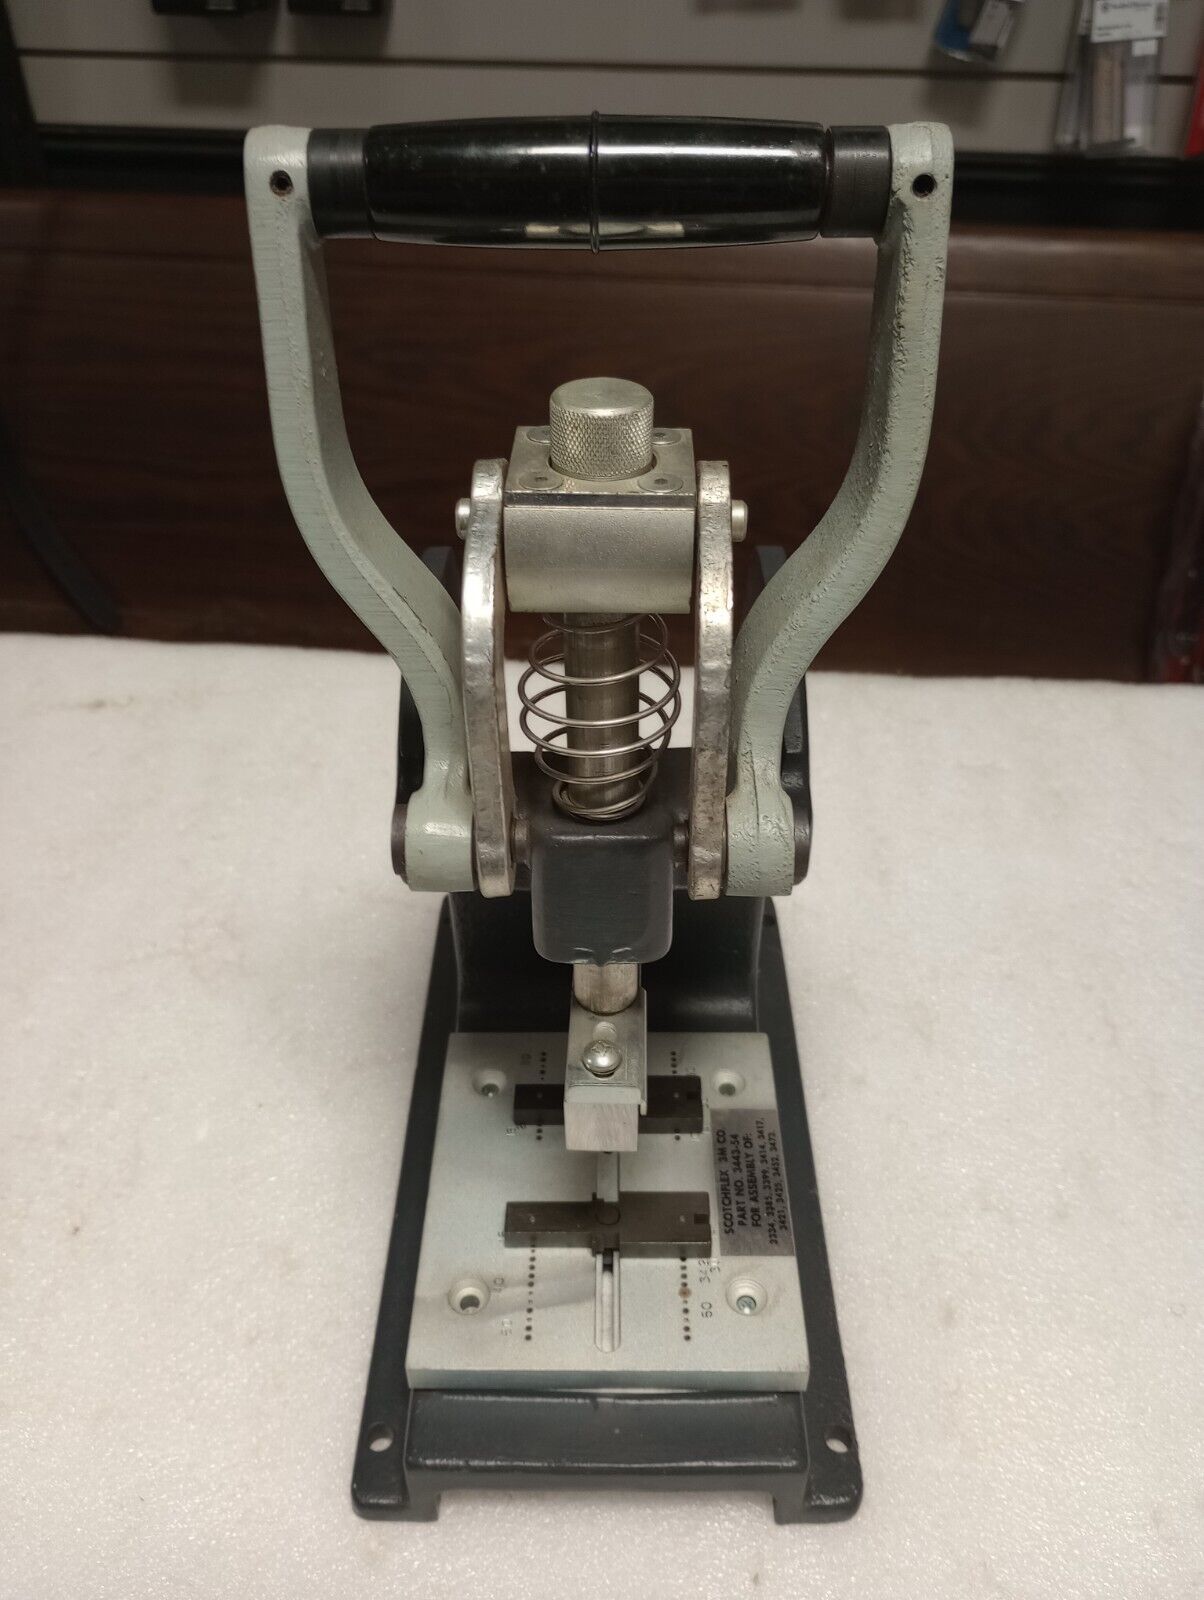 3M Scotchflex Assembly Press Model # 3640